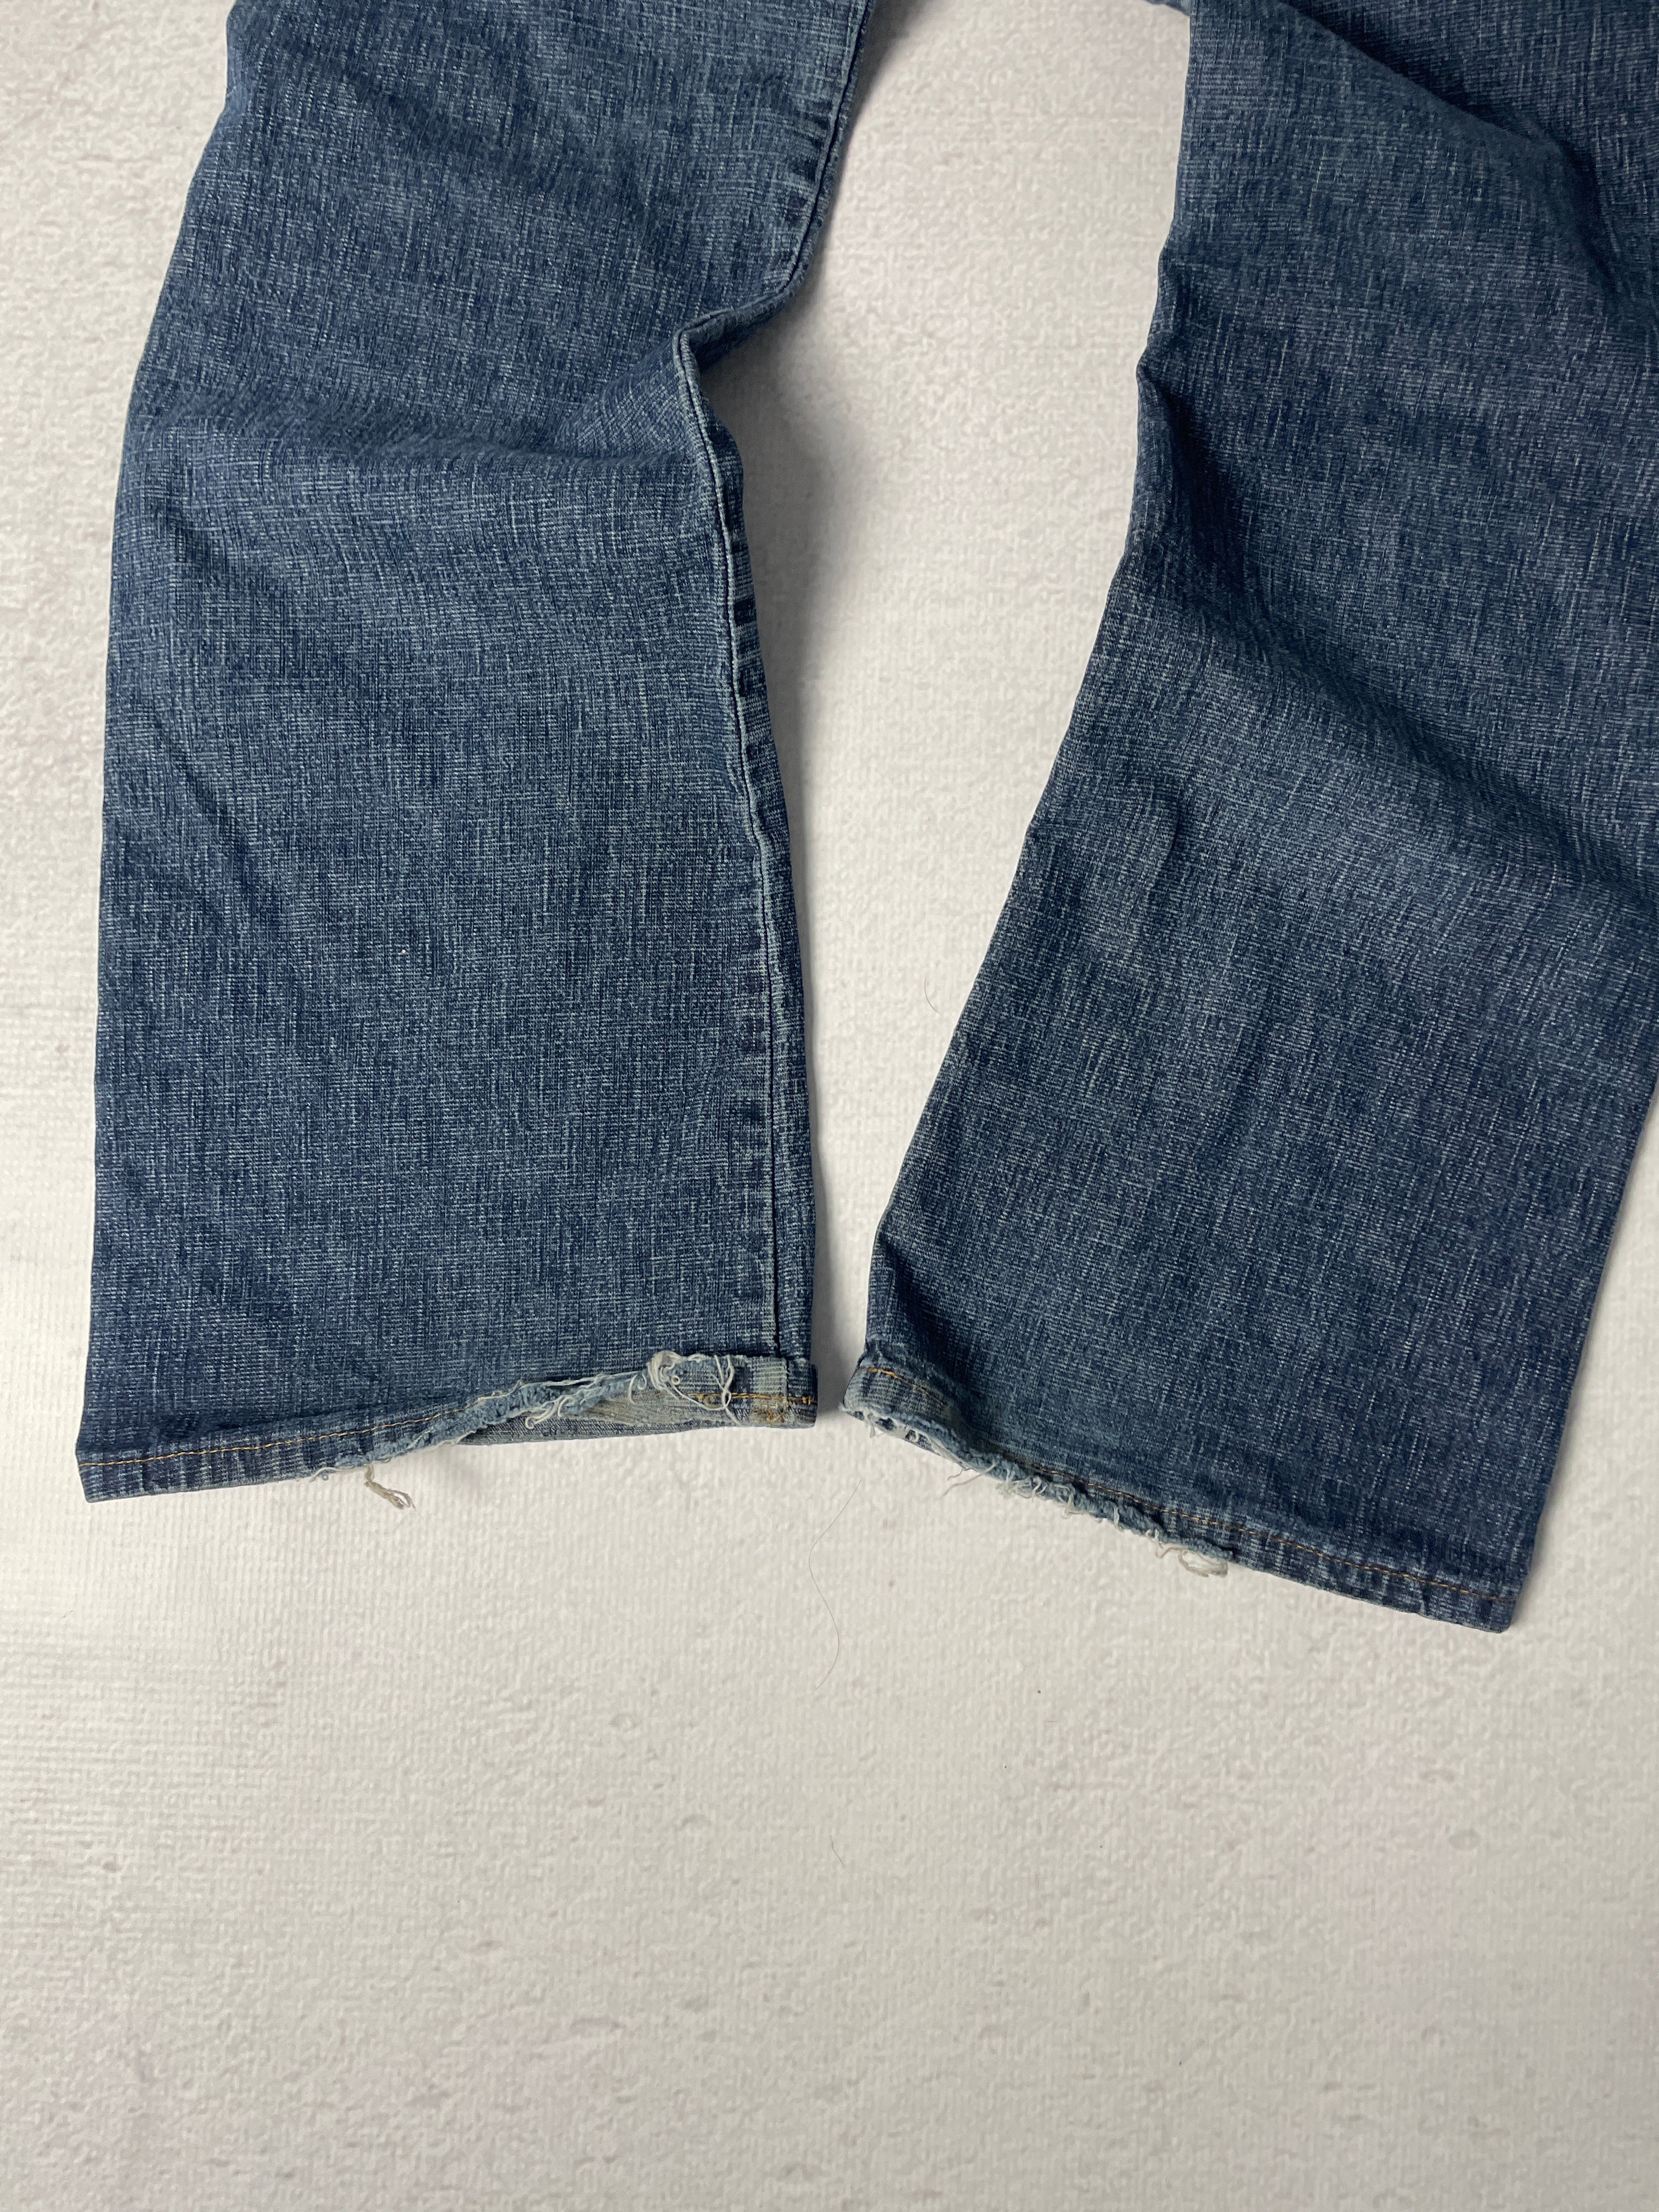 Vintage Tommy Hilfiger Jeans - Women's 29Wx32L